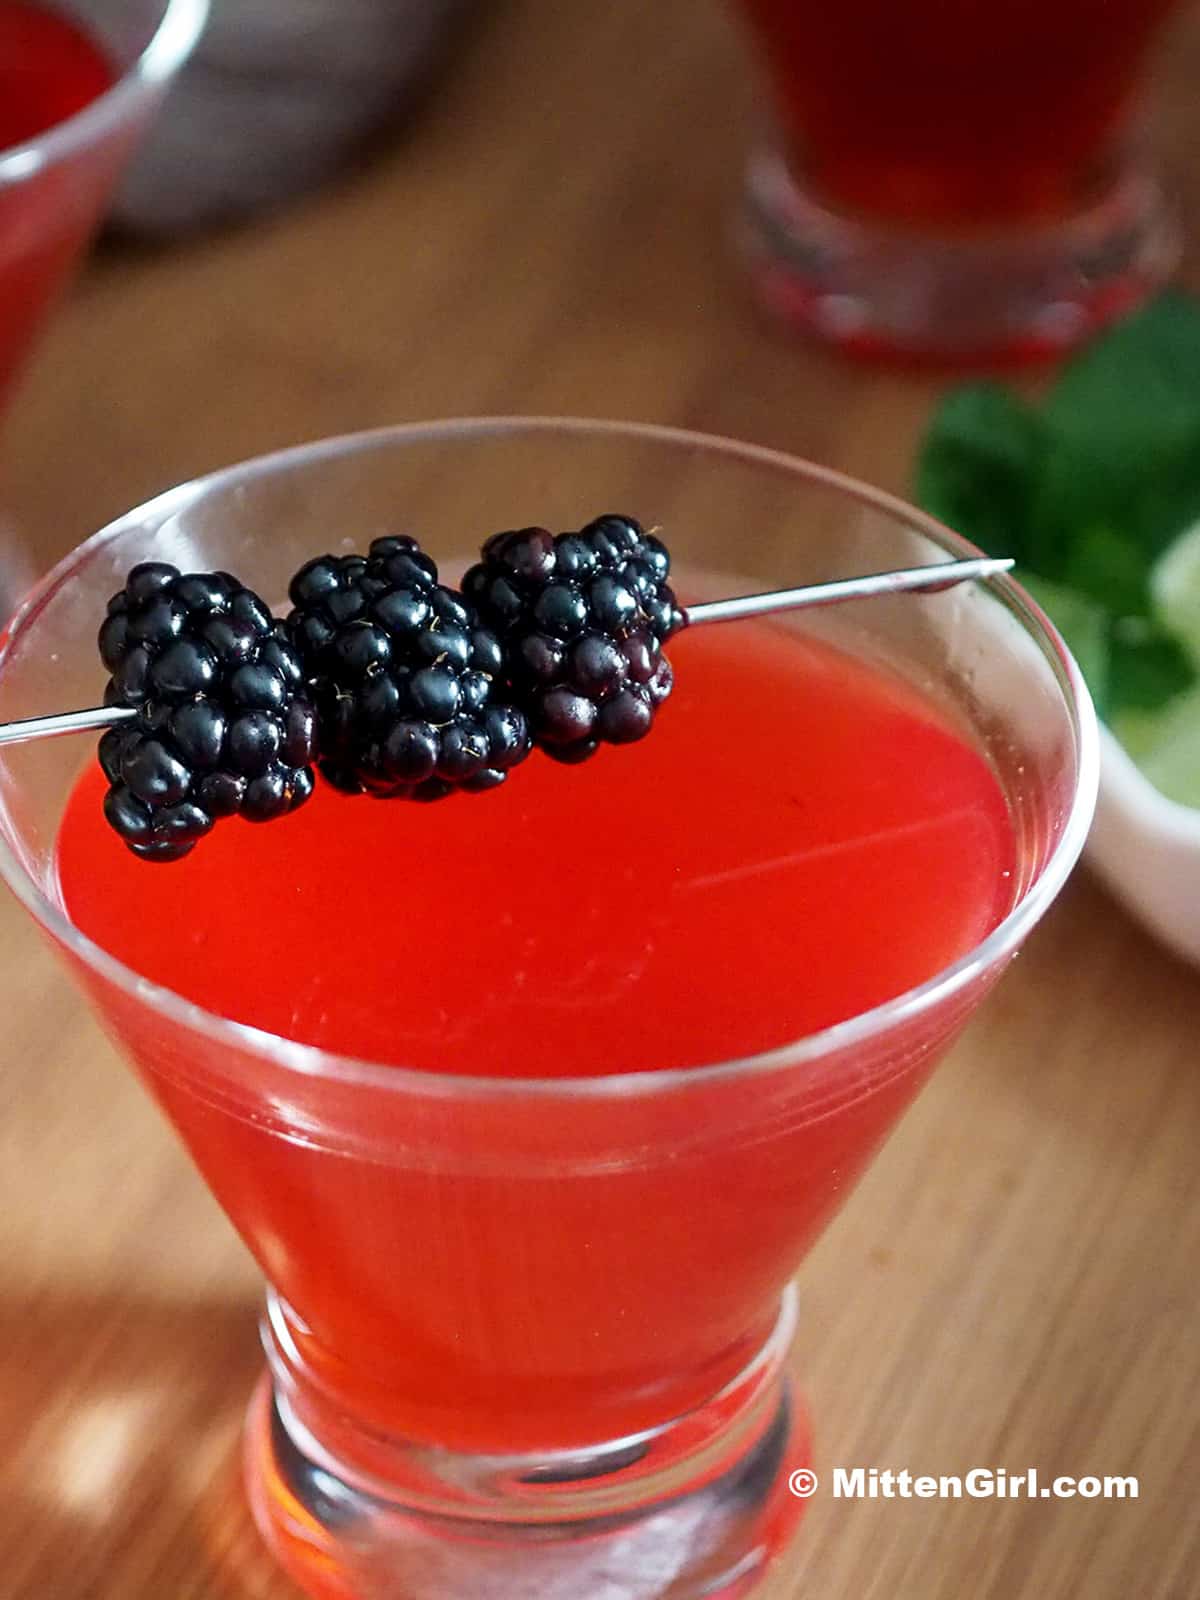 Blackberry vanilla martini with fresh berries. 